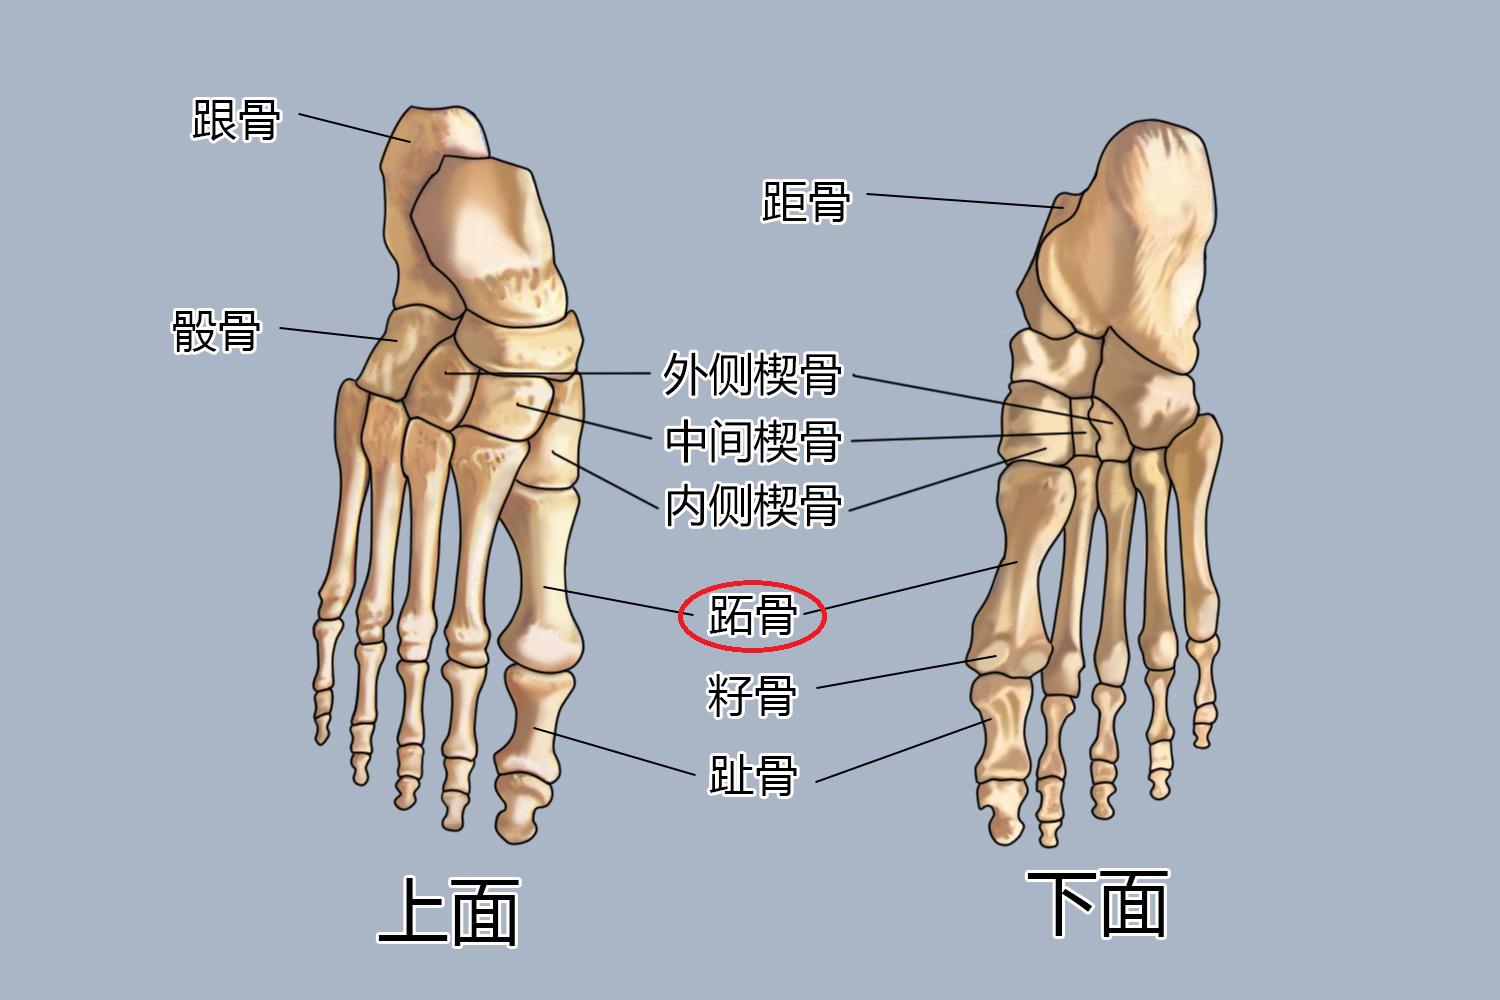 足籽骨的位置图图片